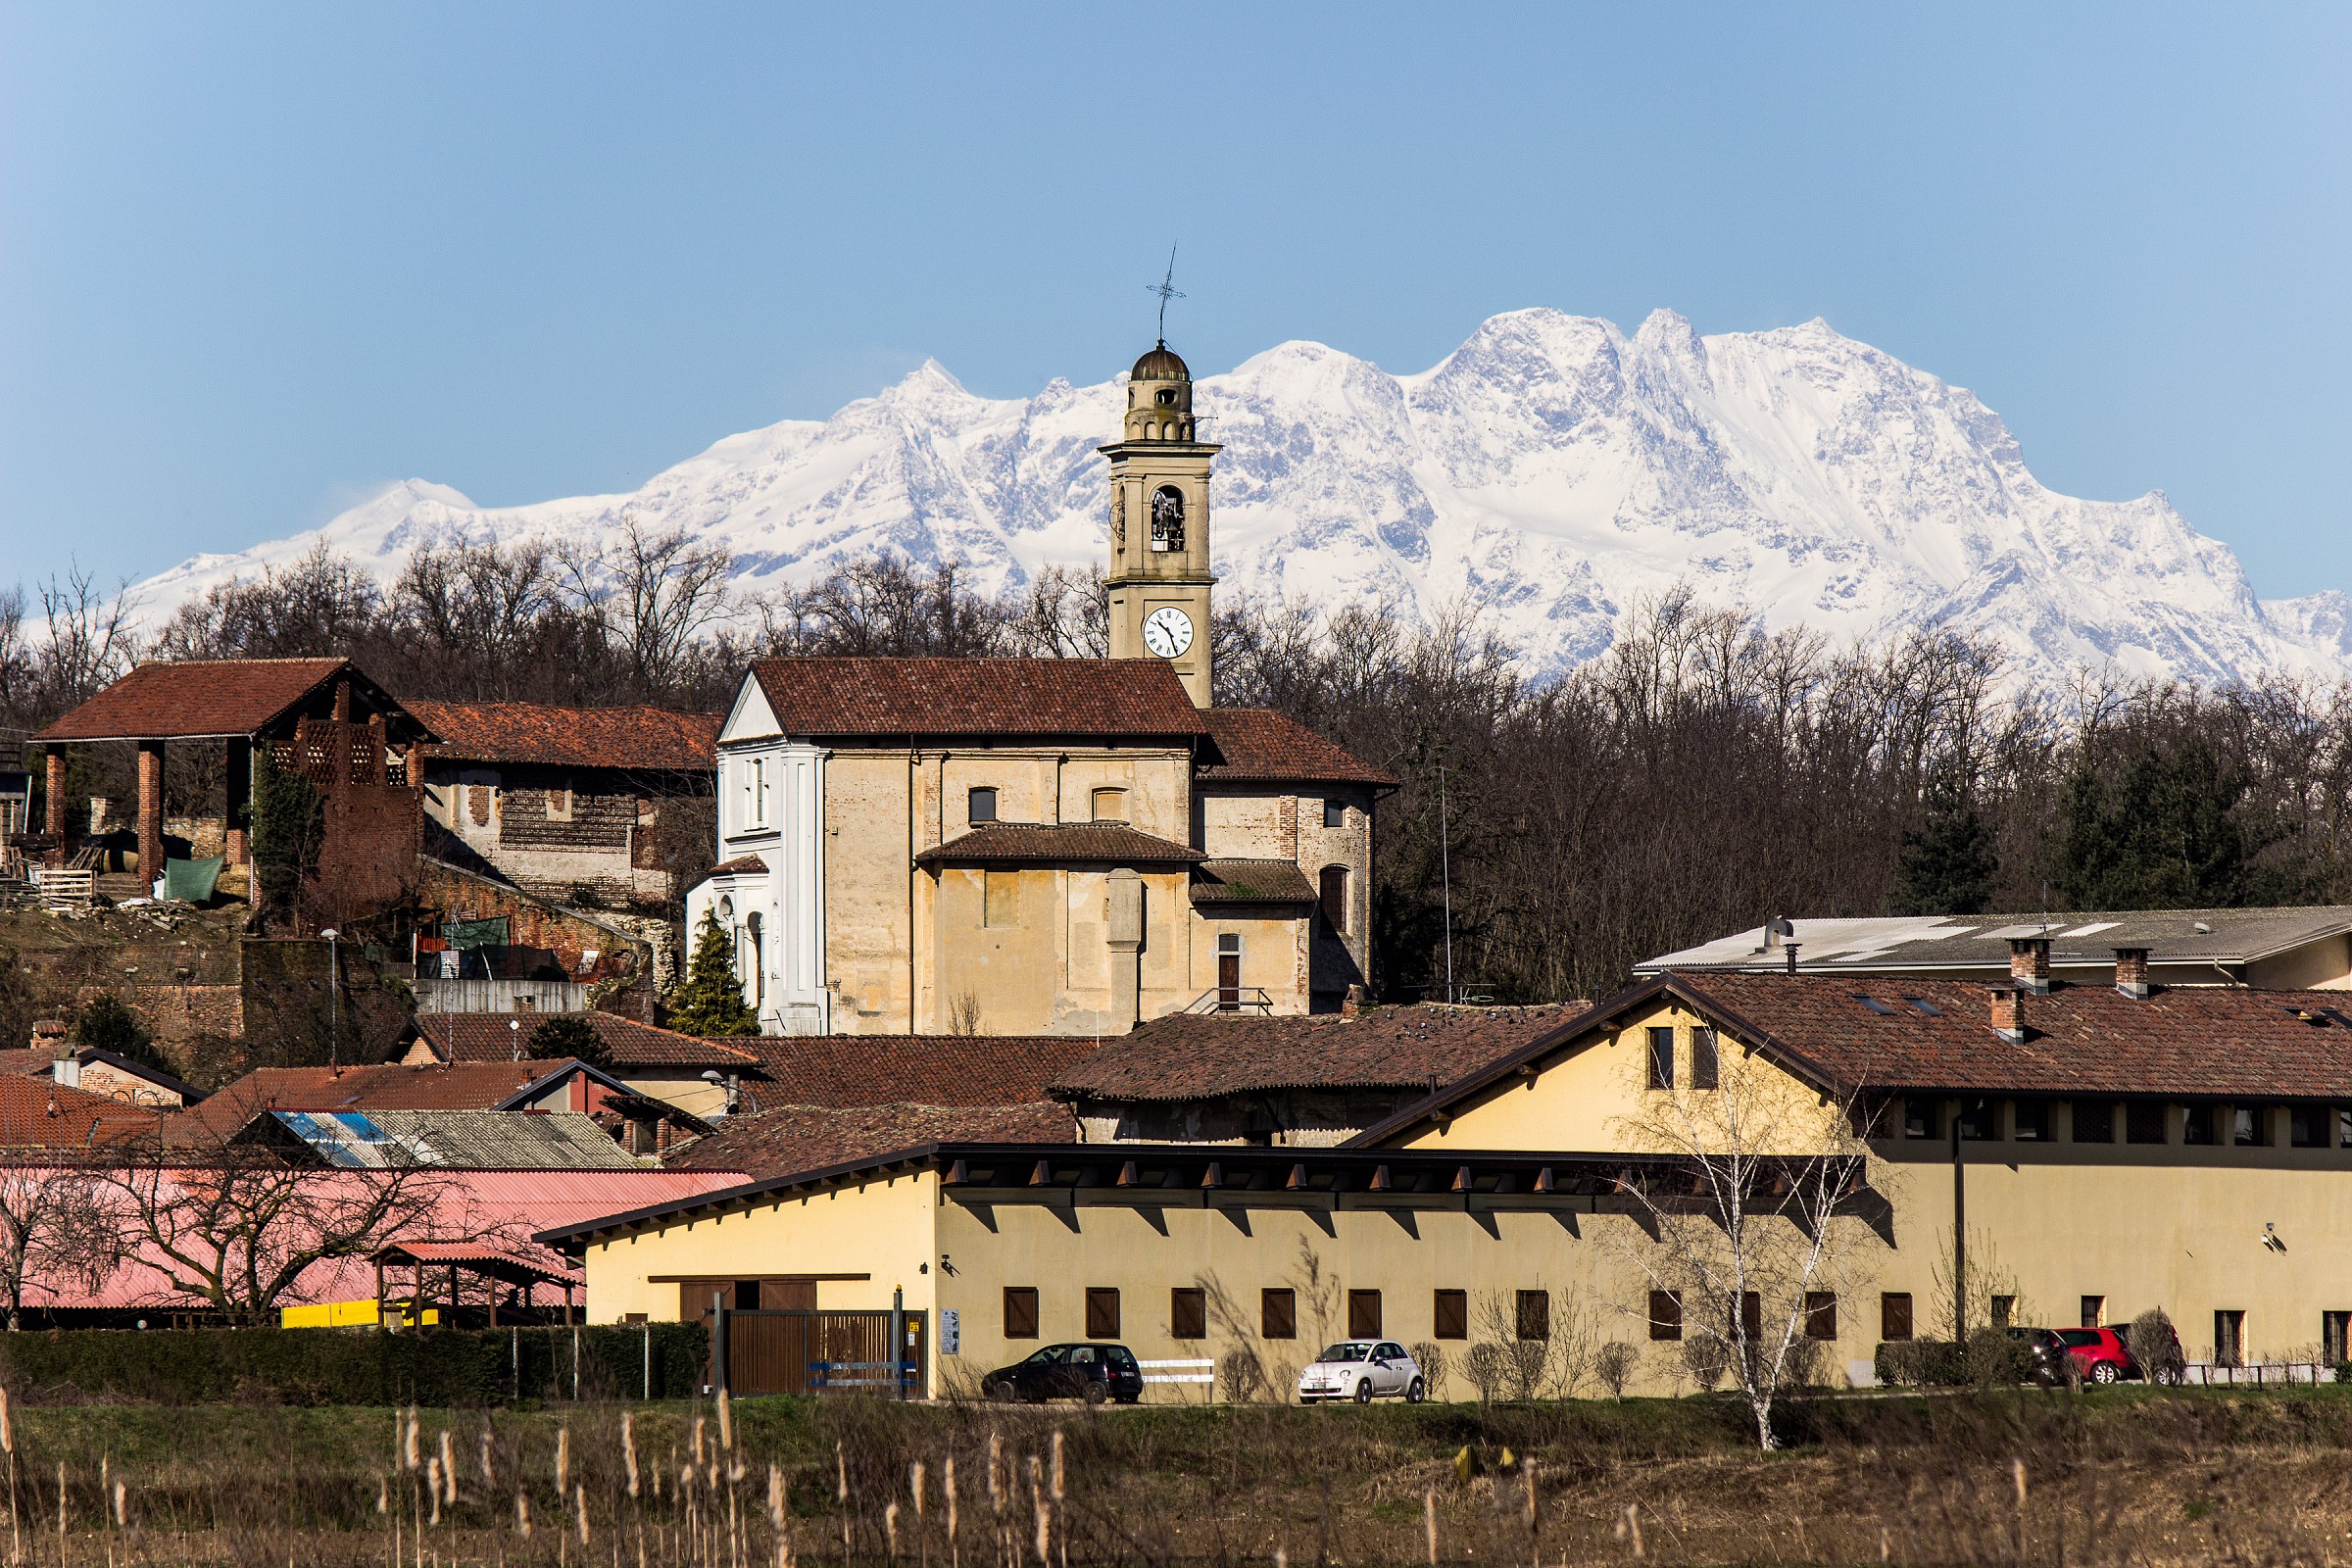 The village of Cavagliano...